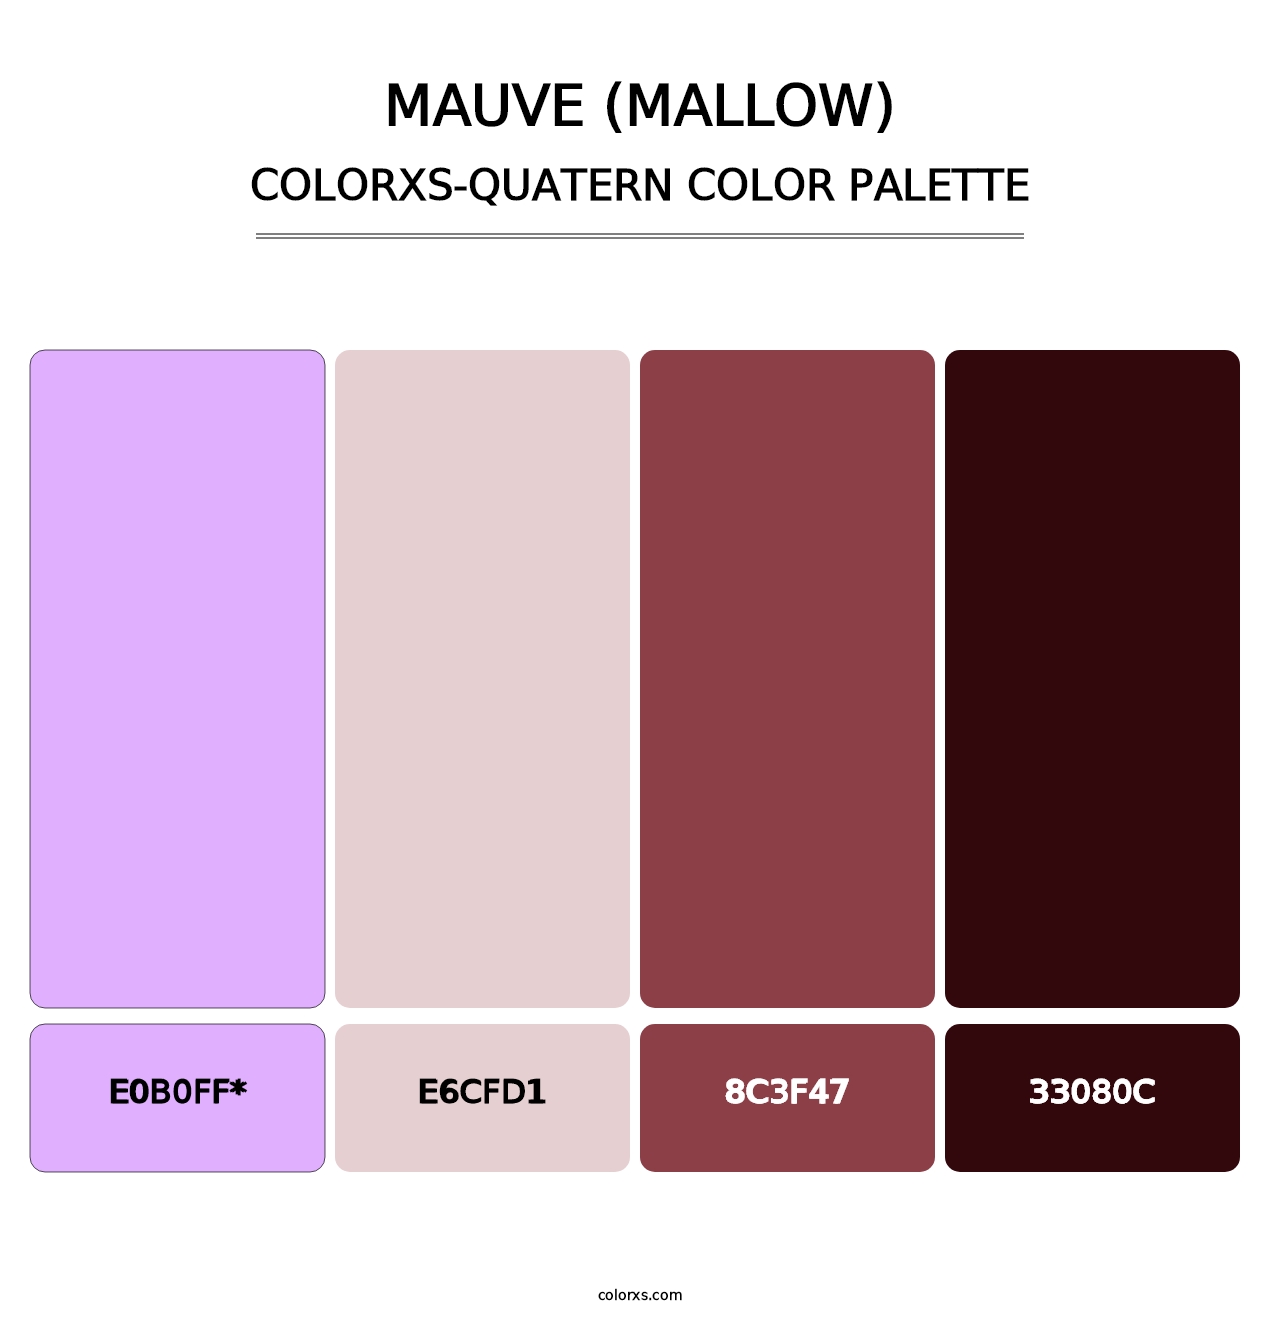 Mauve (Mallow) - Colorxs Quatern Palette